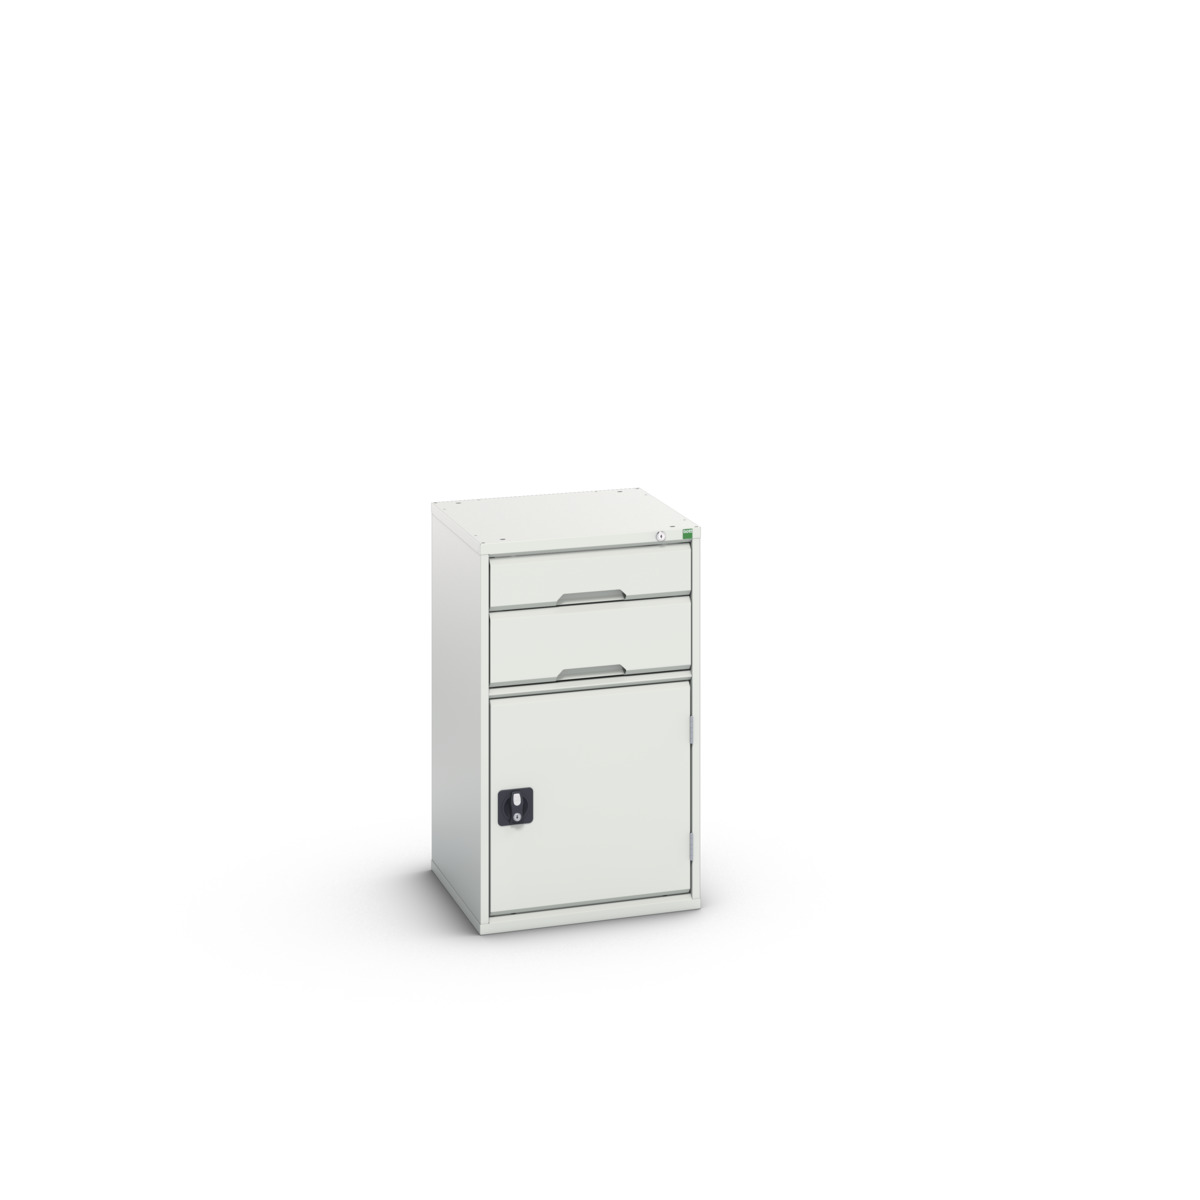 16925037.16 - verso drawer-door cabinet